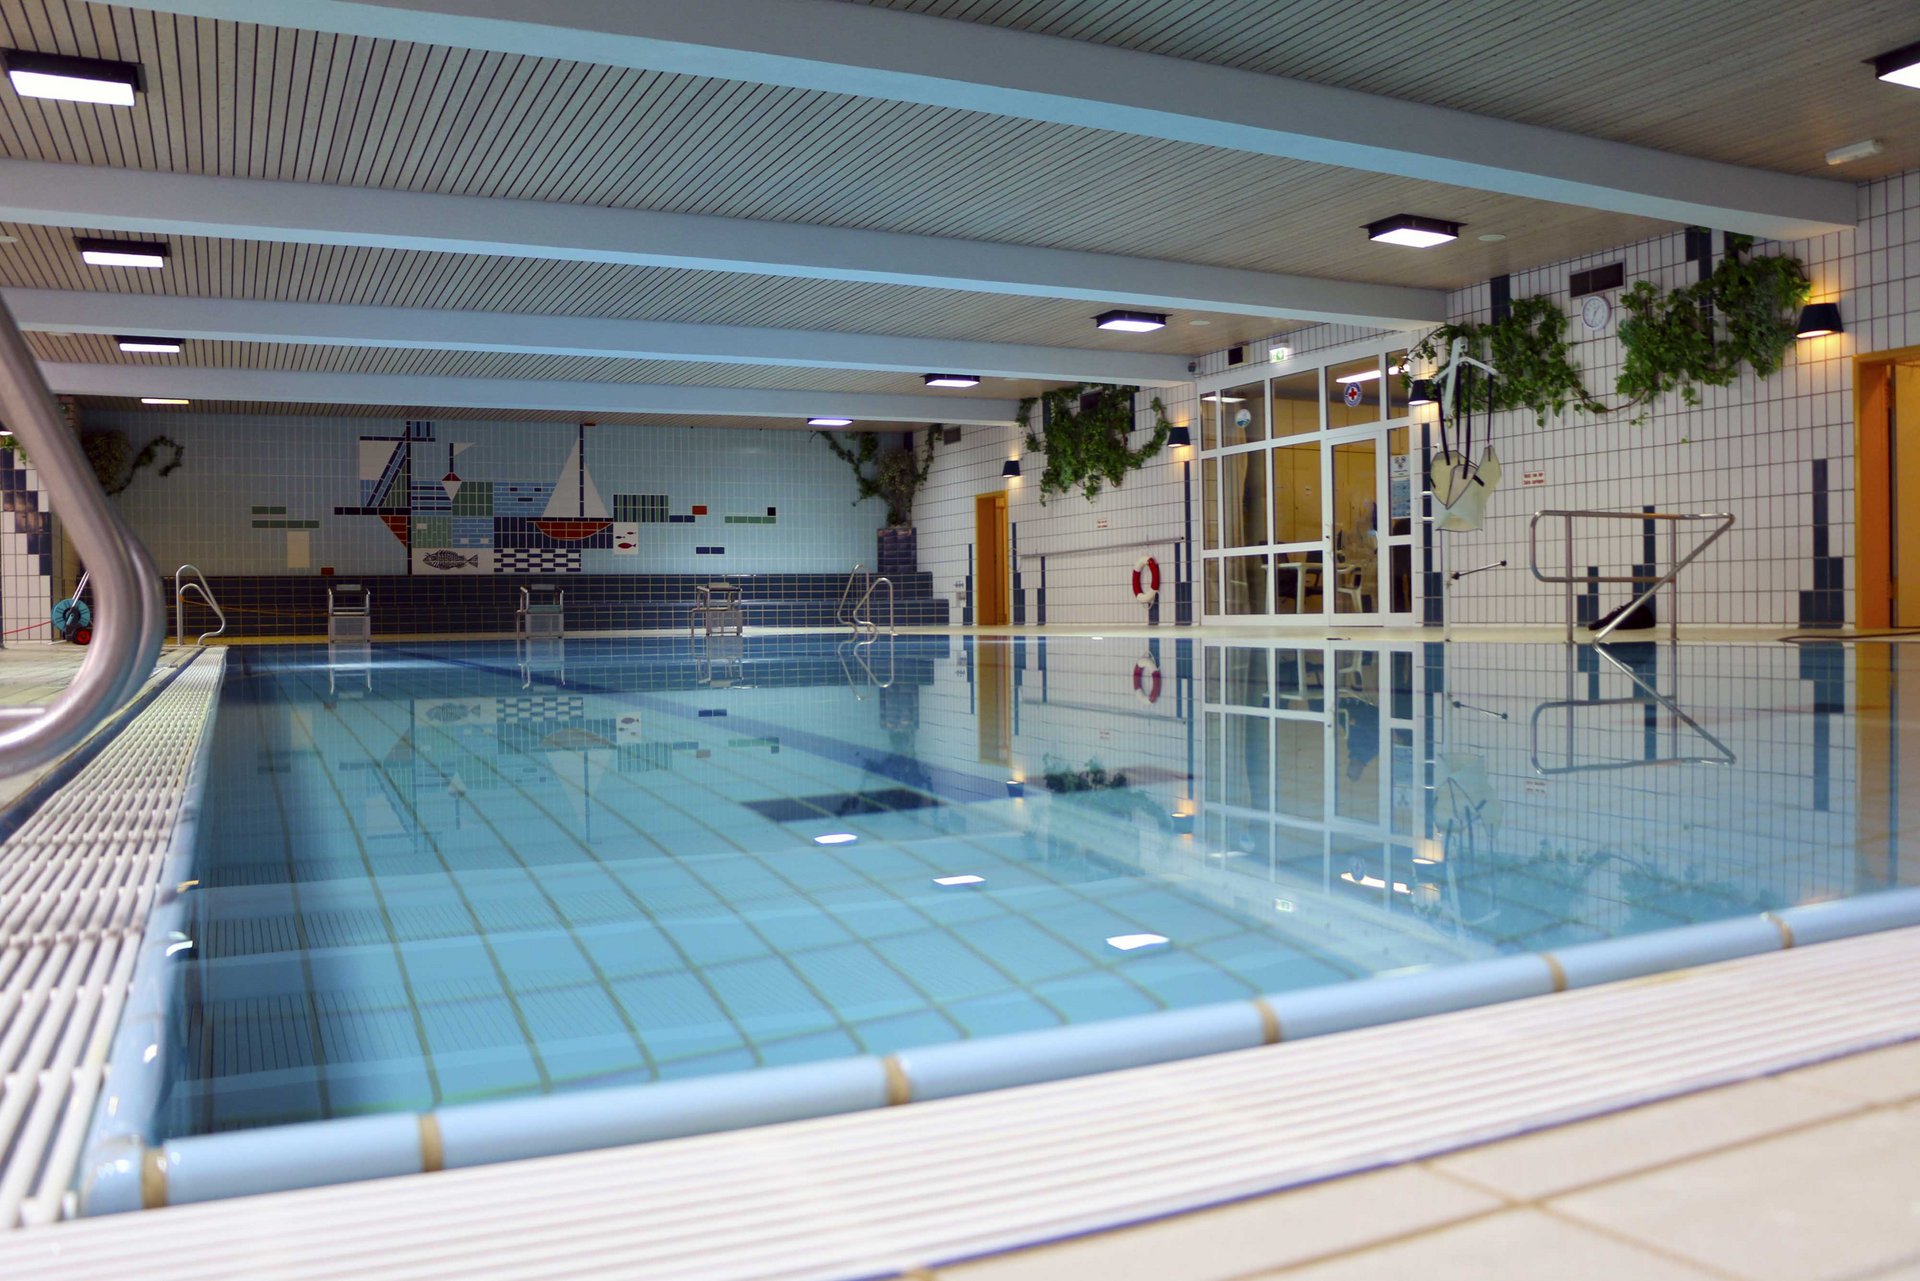 Bild: Schwimmbecken im Hallenbad Mitterteich.